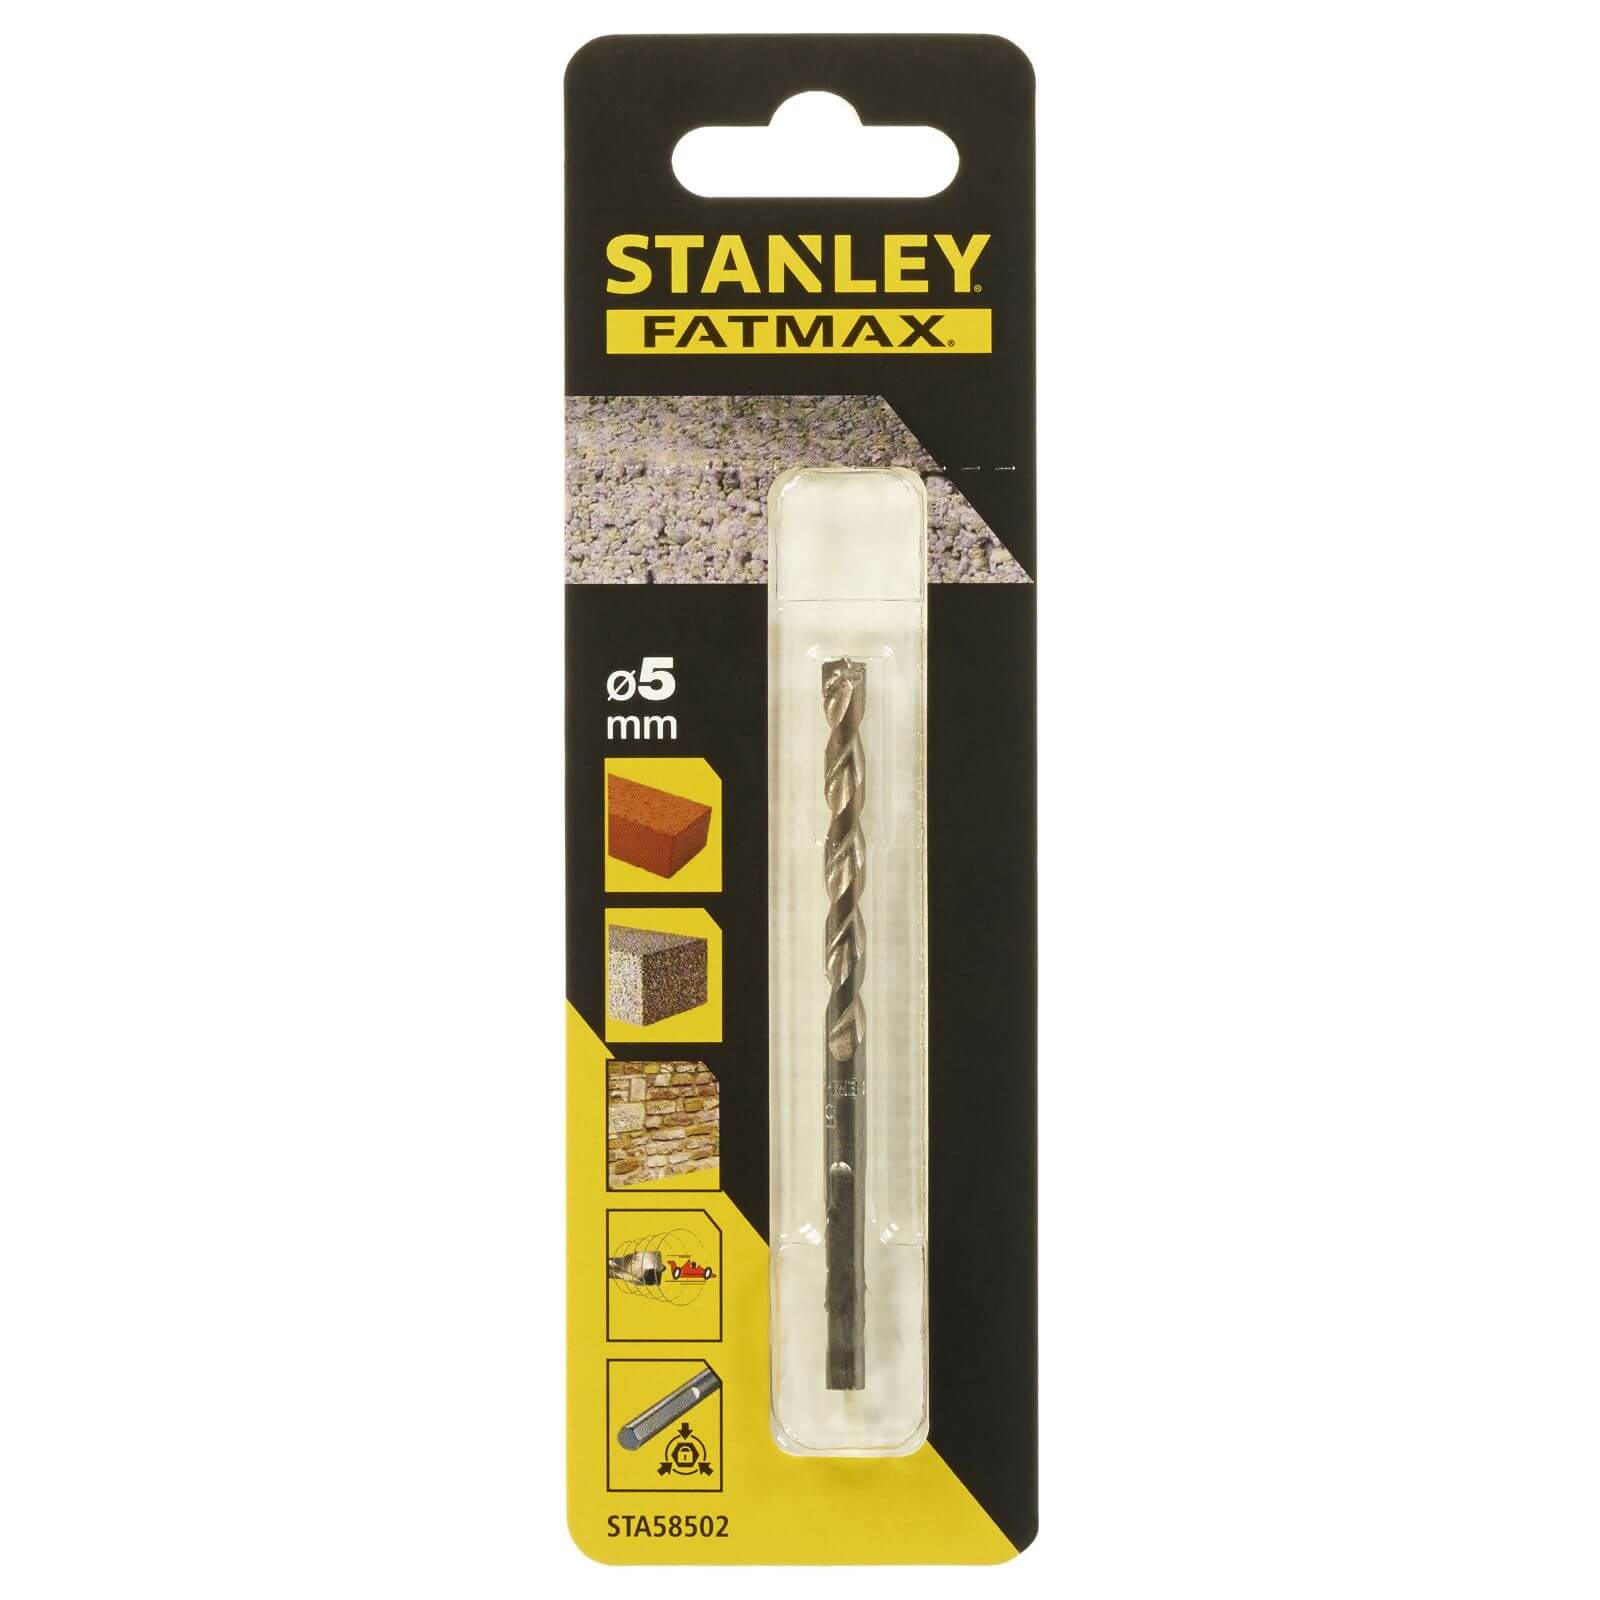 Stanley Fatmax Masonry Drill Bit 5 x 85mm - STA58502-QZ